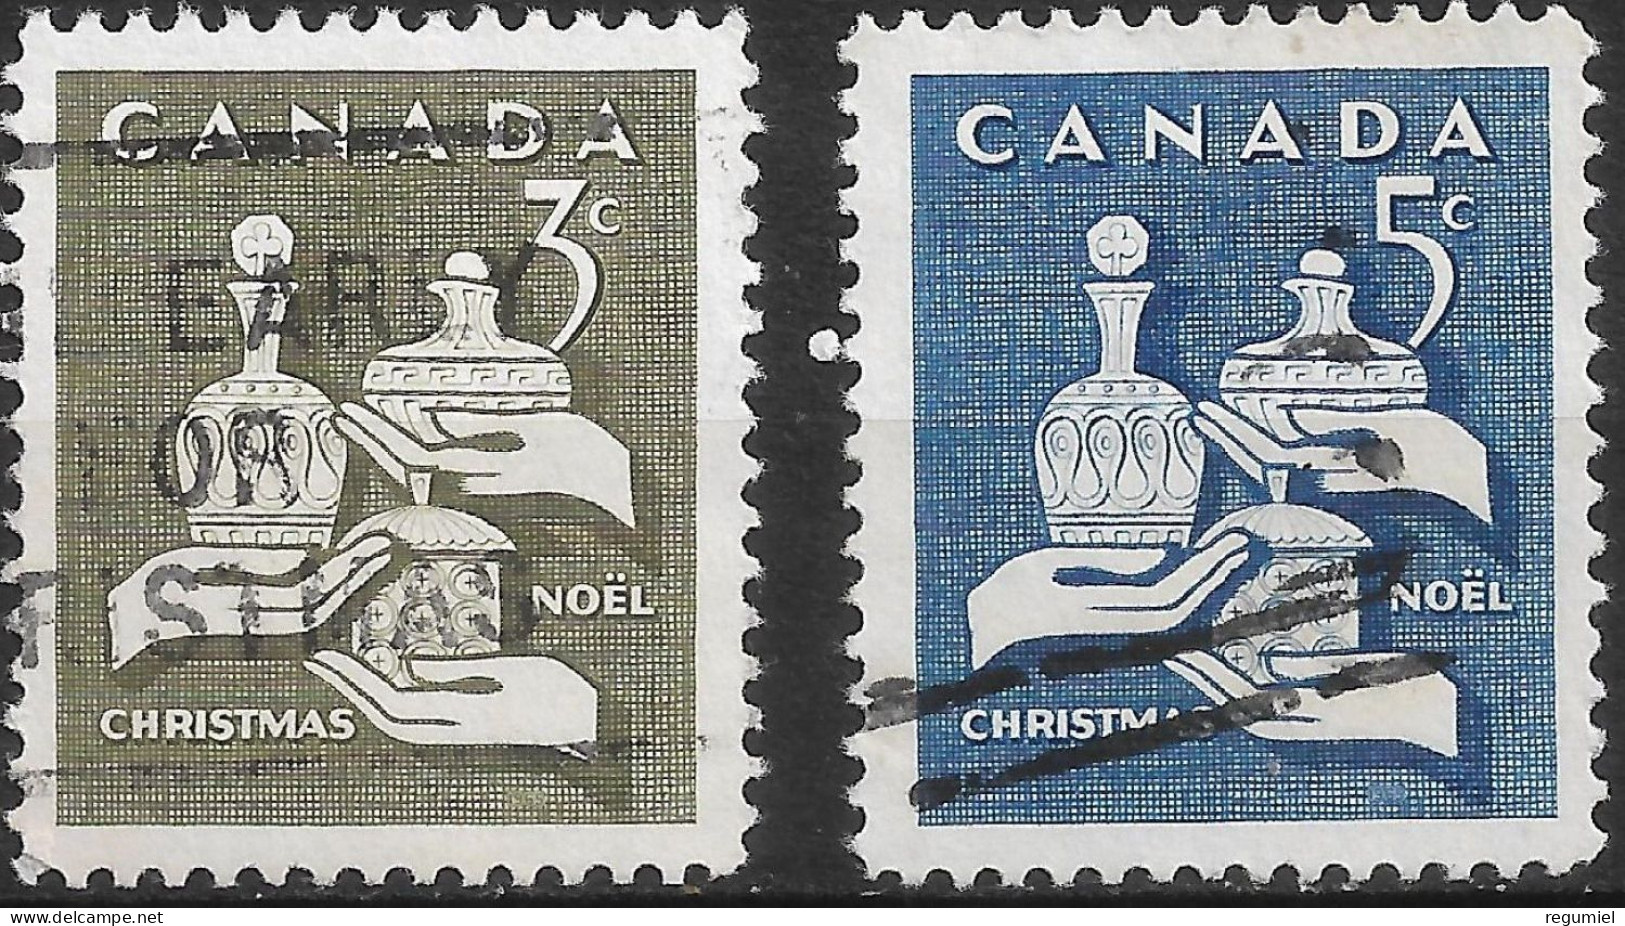 Canada U  367/368 (o) Usado. 1965 - Usati